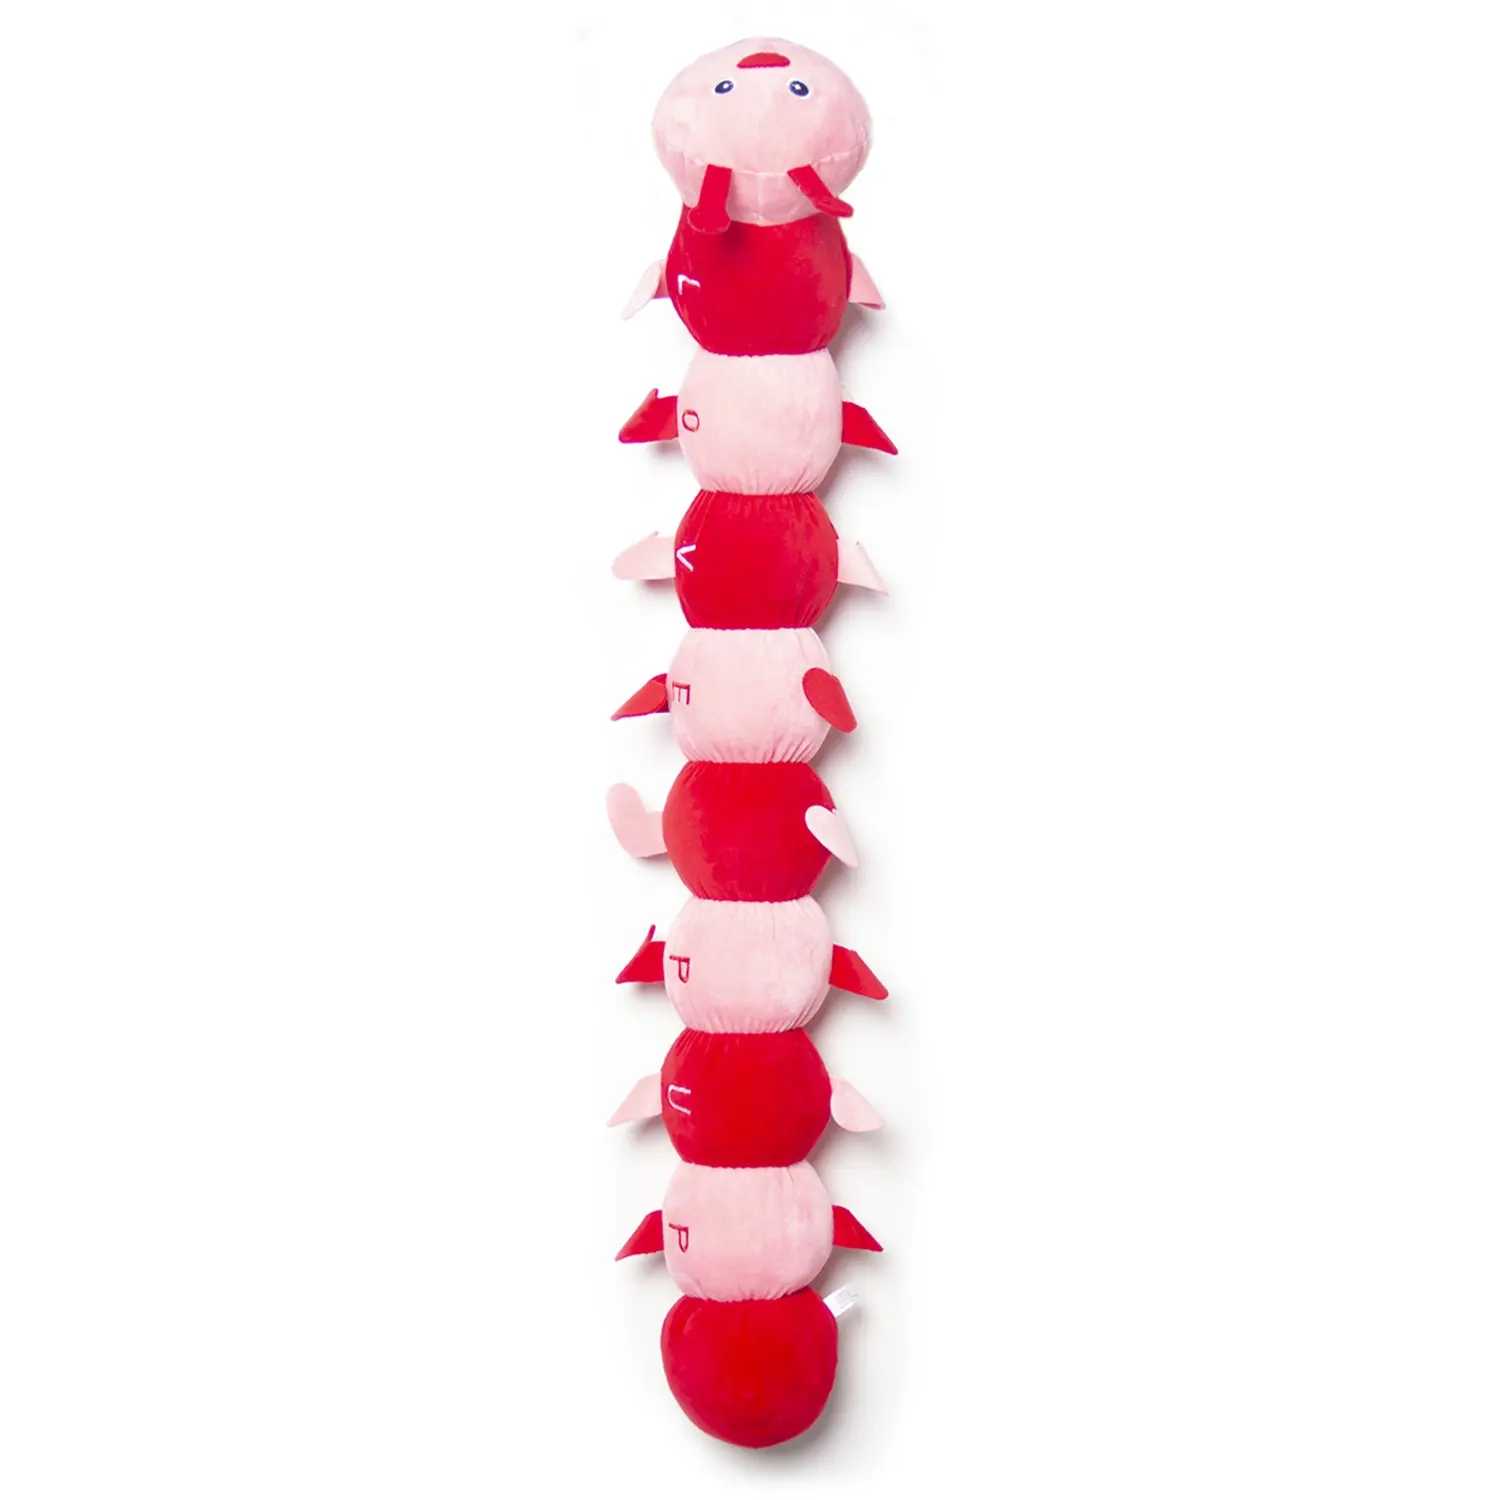 لعبة على شكل كلب تفاعلي بحبل مع كرة لعبة على شكل كلب طبيعي لعبة على شكل كلب لعبة عيد الحب من القطيفة + لون وردي وأحمر